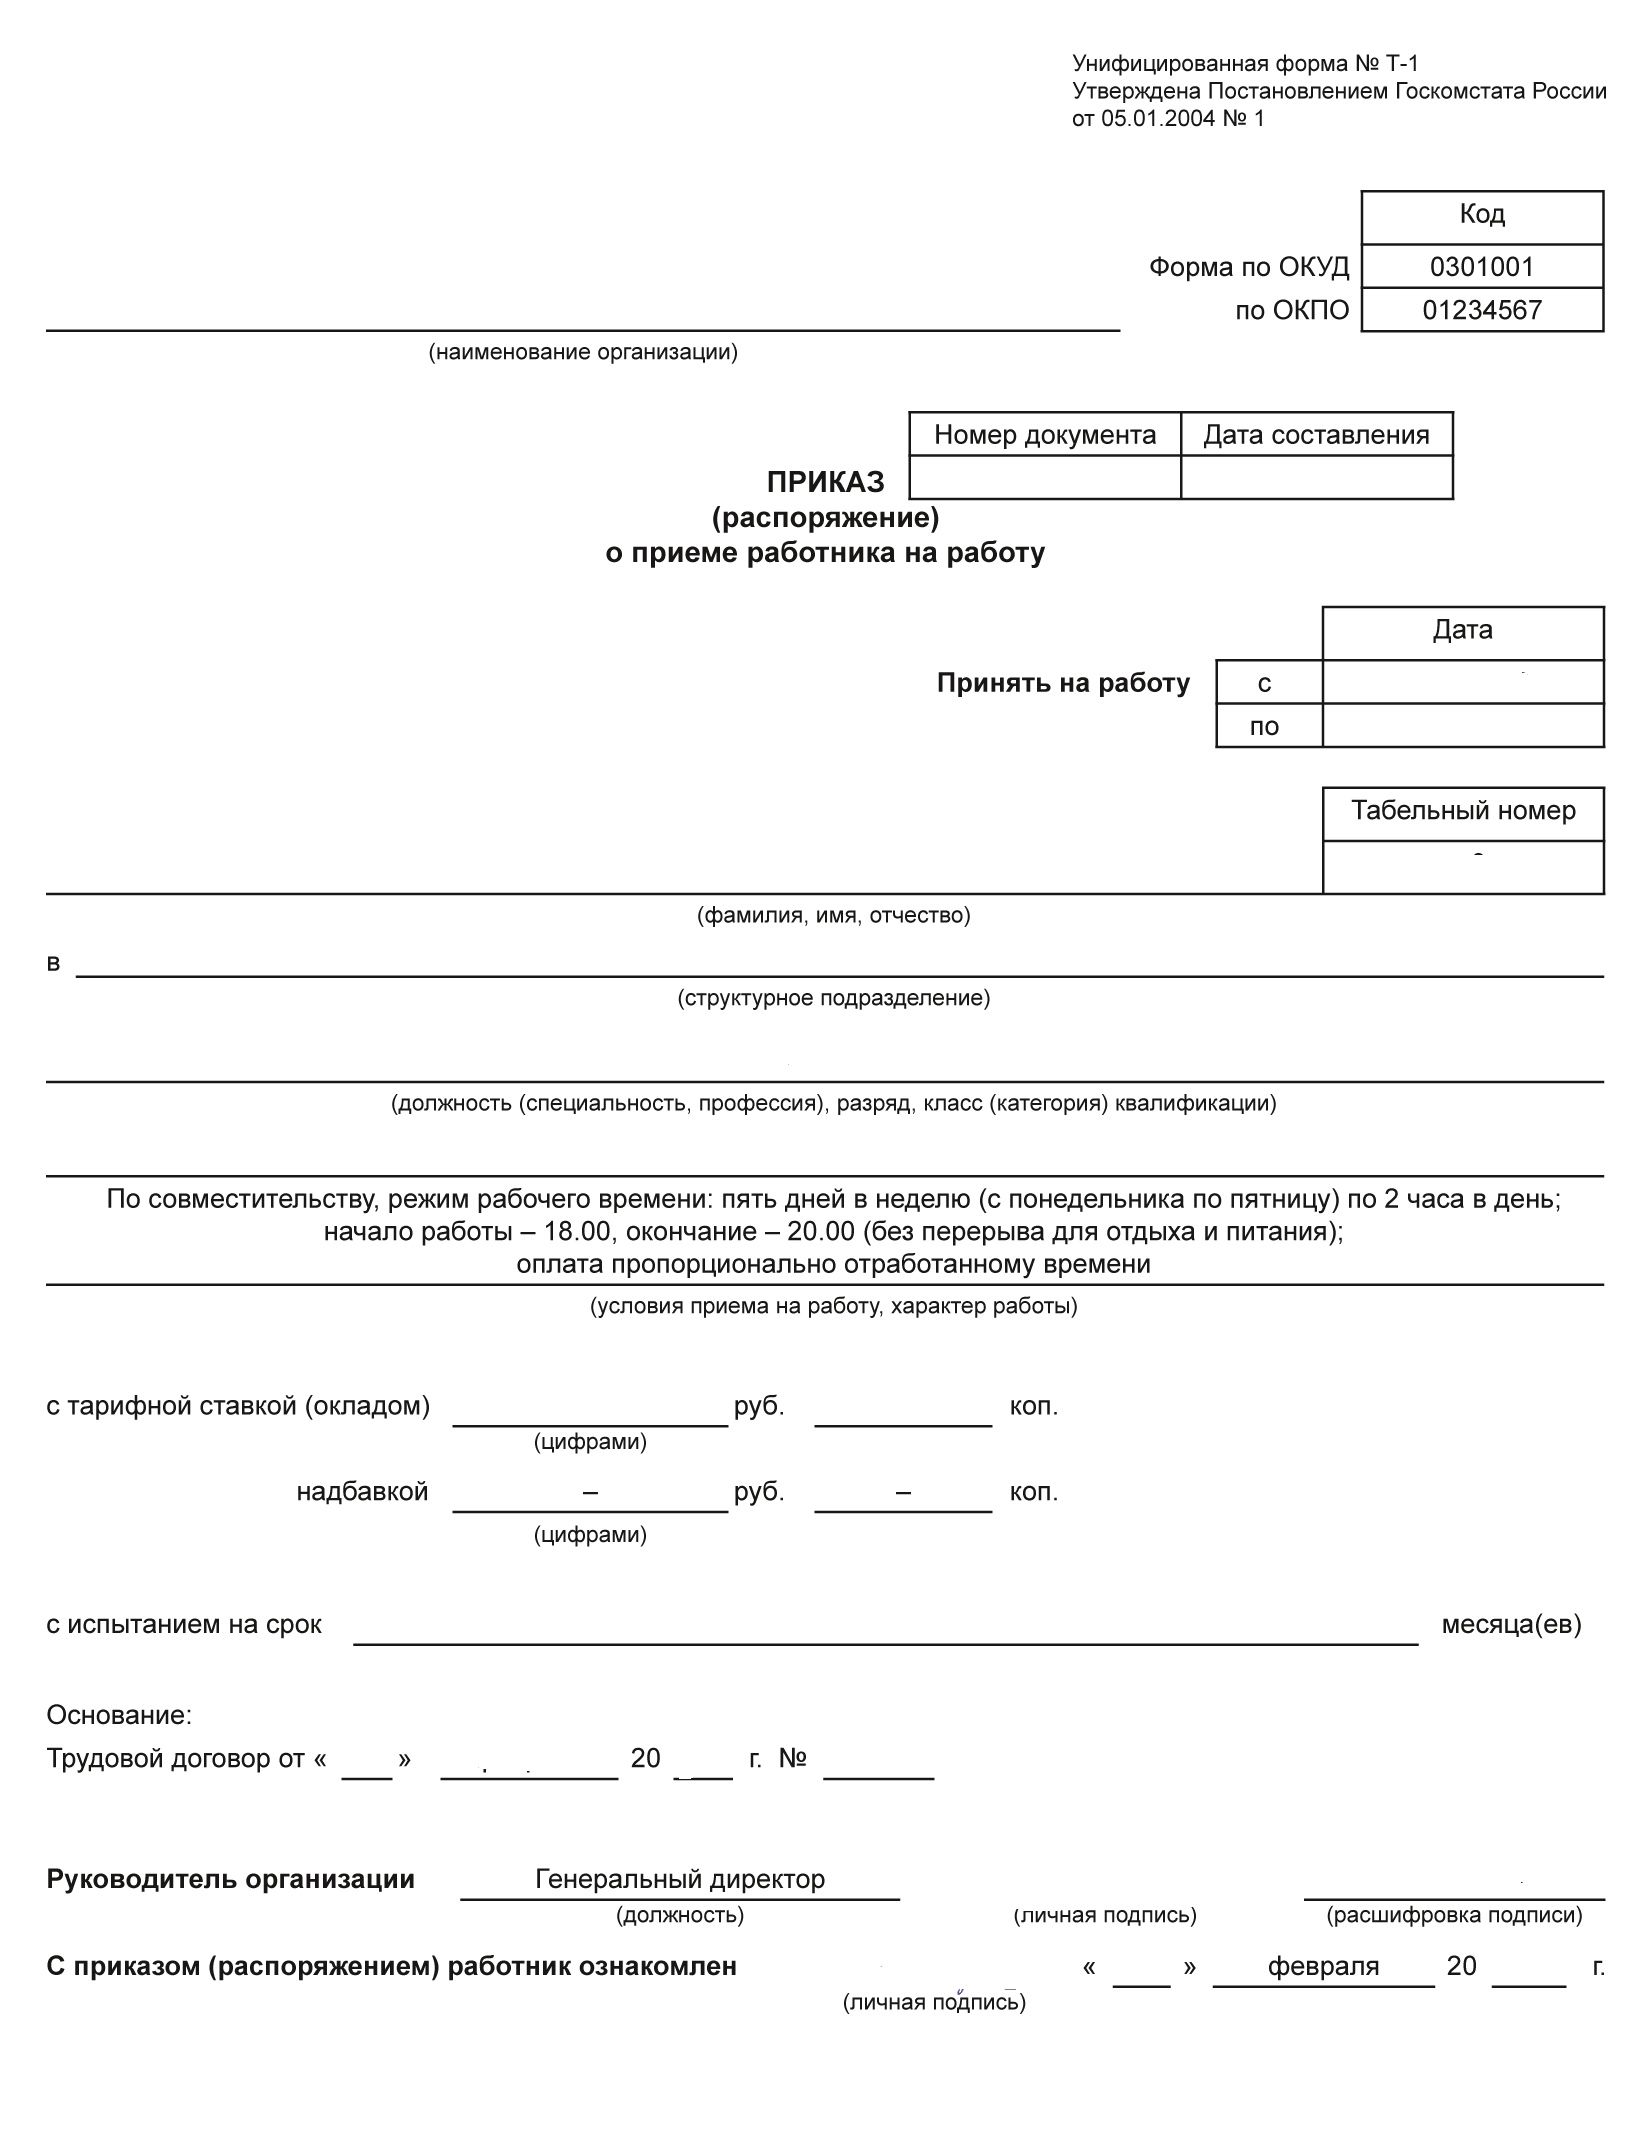 Унифицированная форма приказа о приеме на работу по совместительству